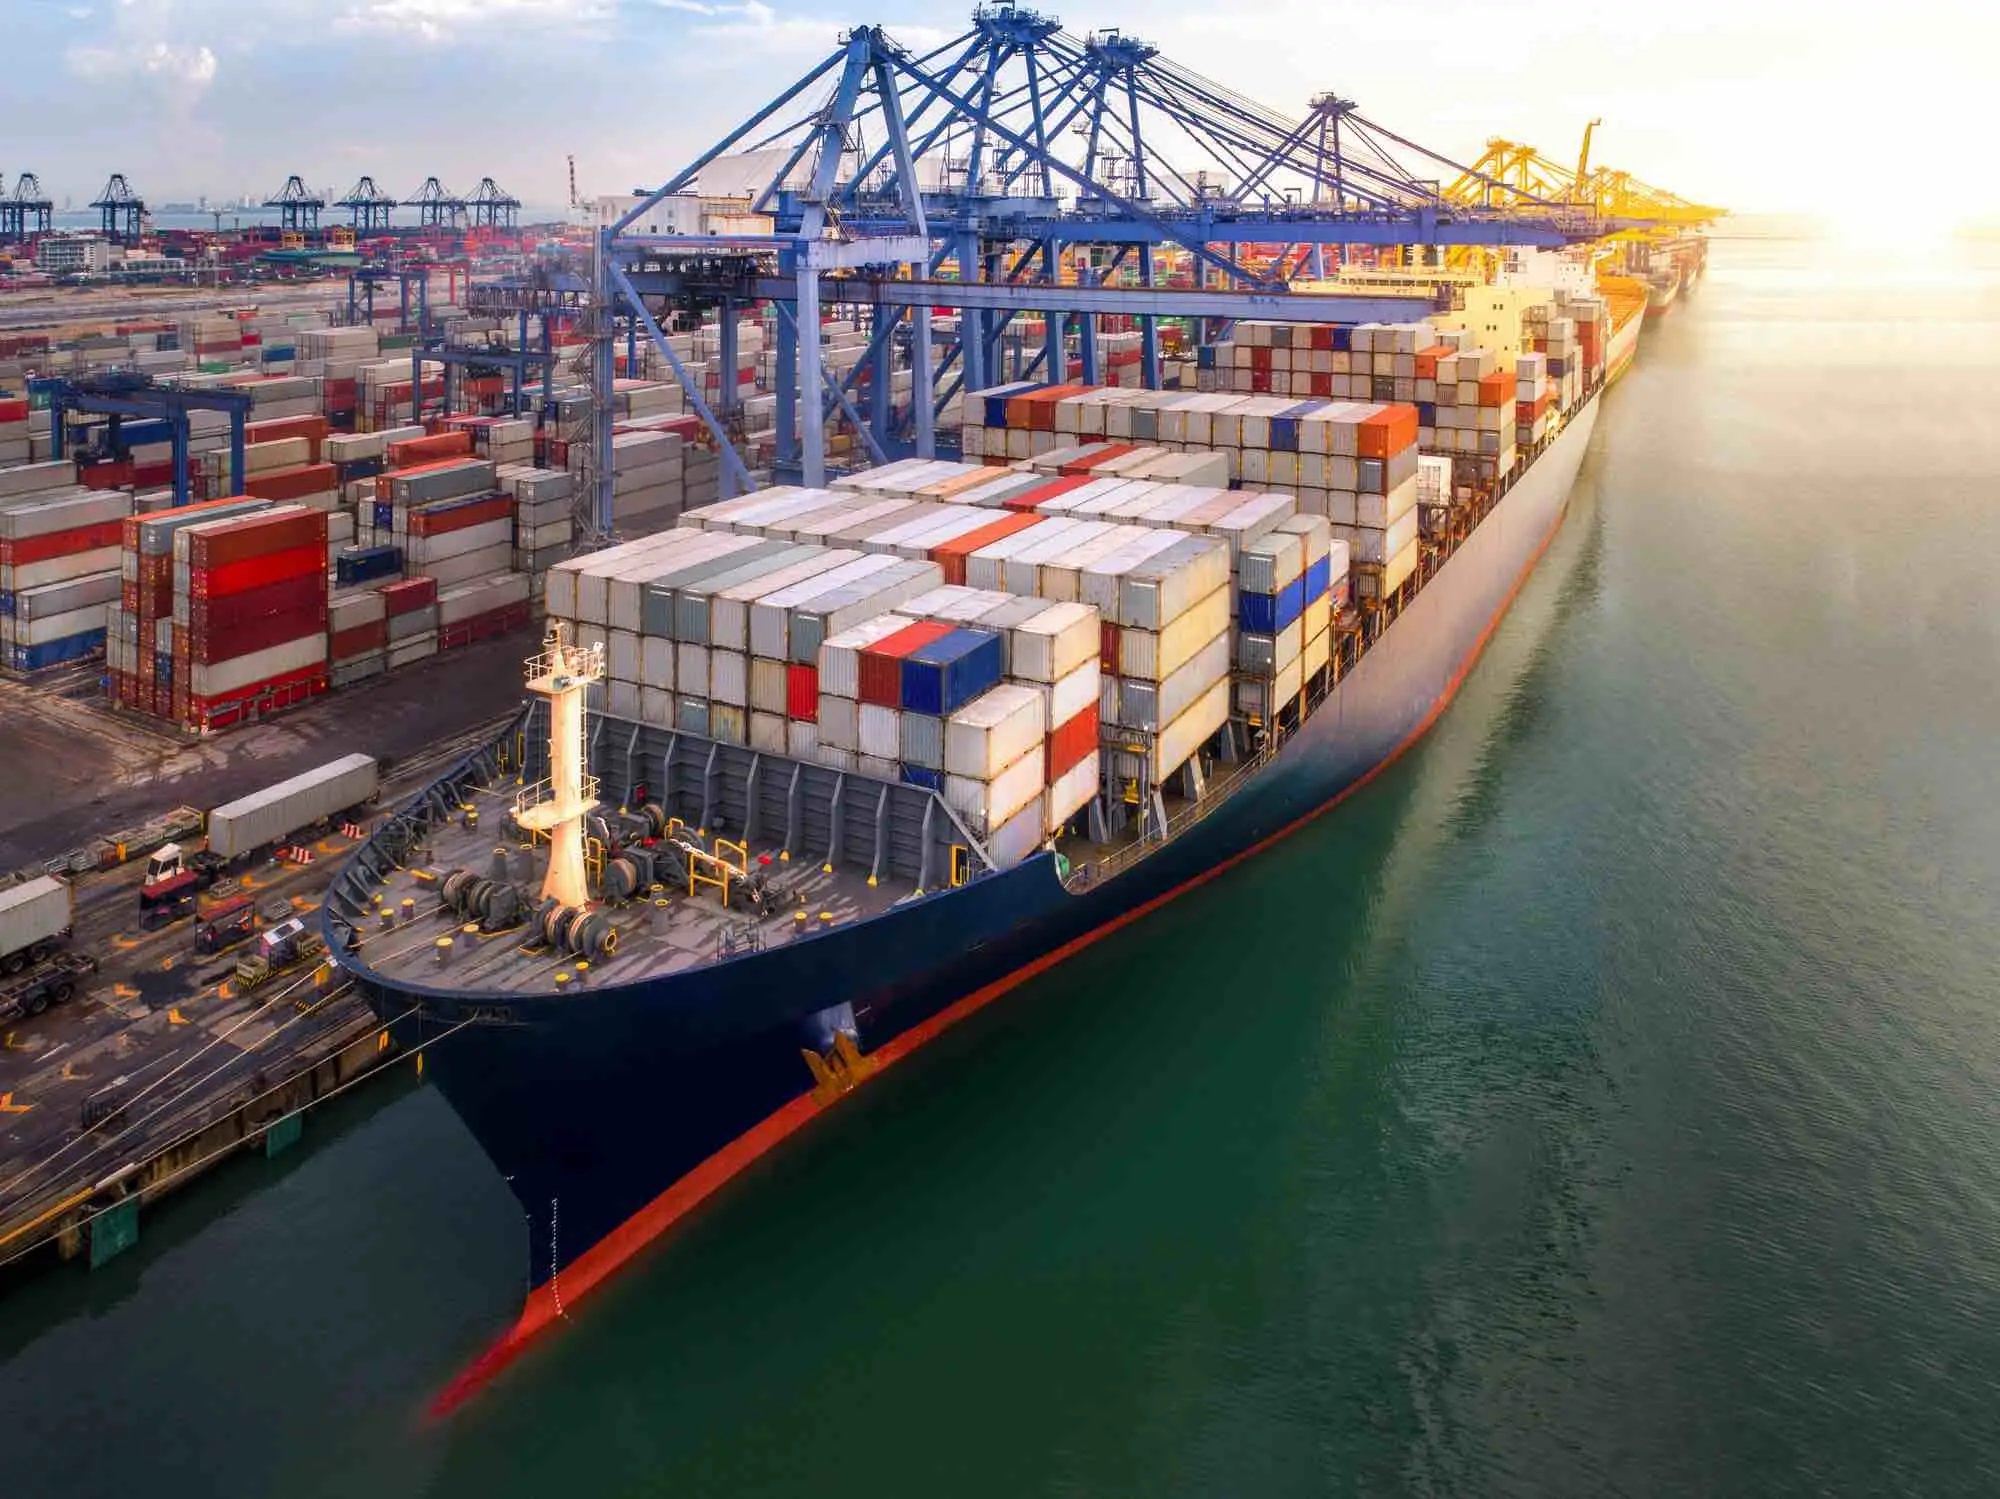 solicitud de flete internacional liners terms - Cuáles son los términos de línea en el transporte marítimo